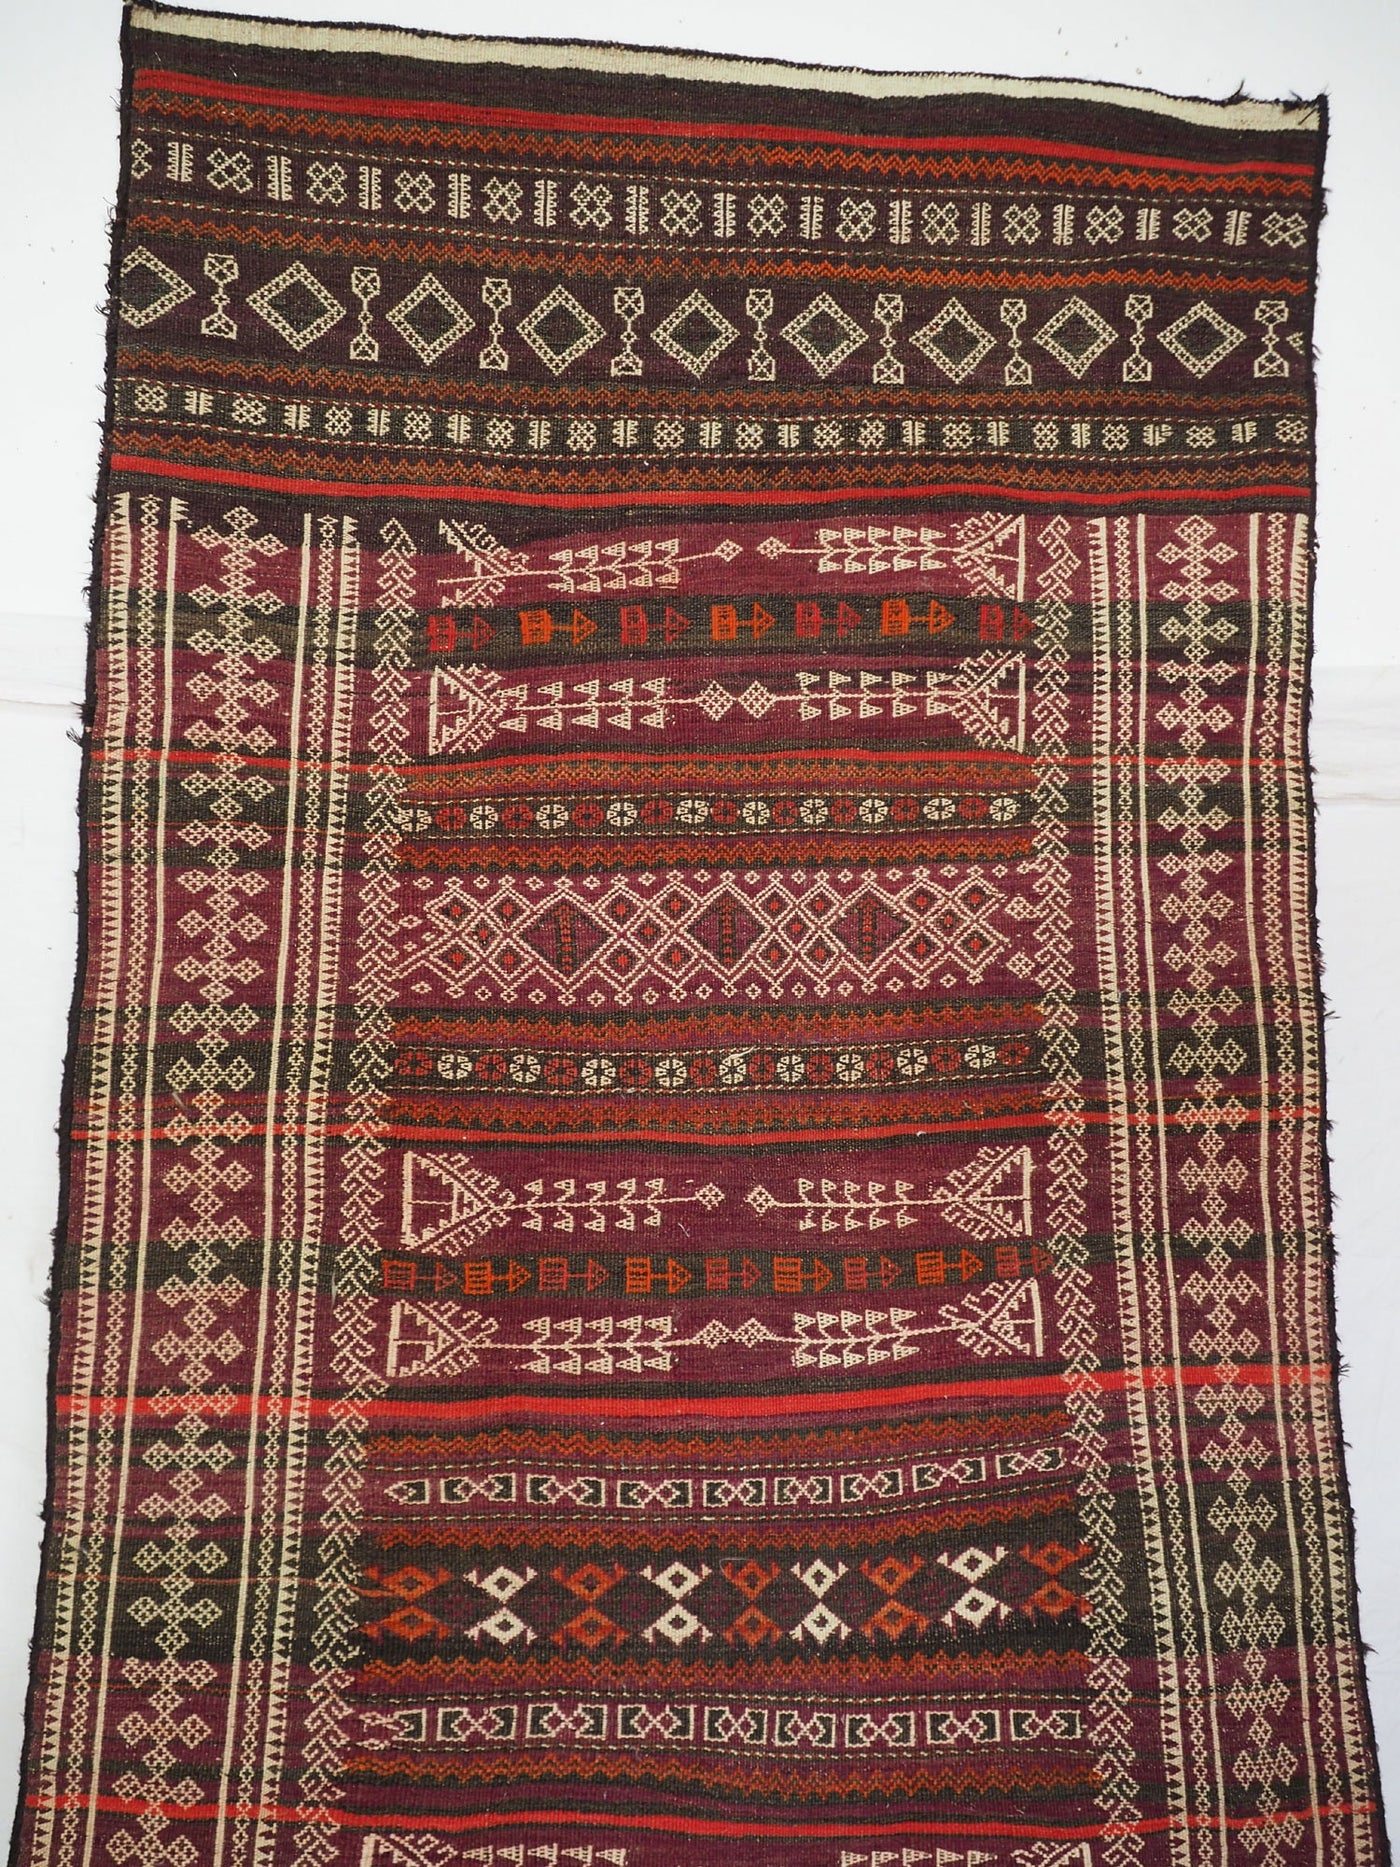 340x100 cm Antik orient handgewebte Teppich Nomaden Balouch sumakh kelim afghan Beloch kilim Nr-19/PK-12  Orientsbazar   